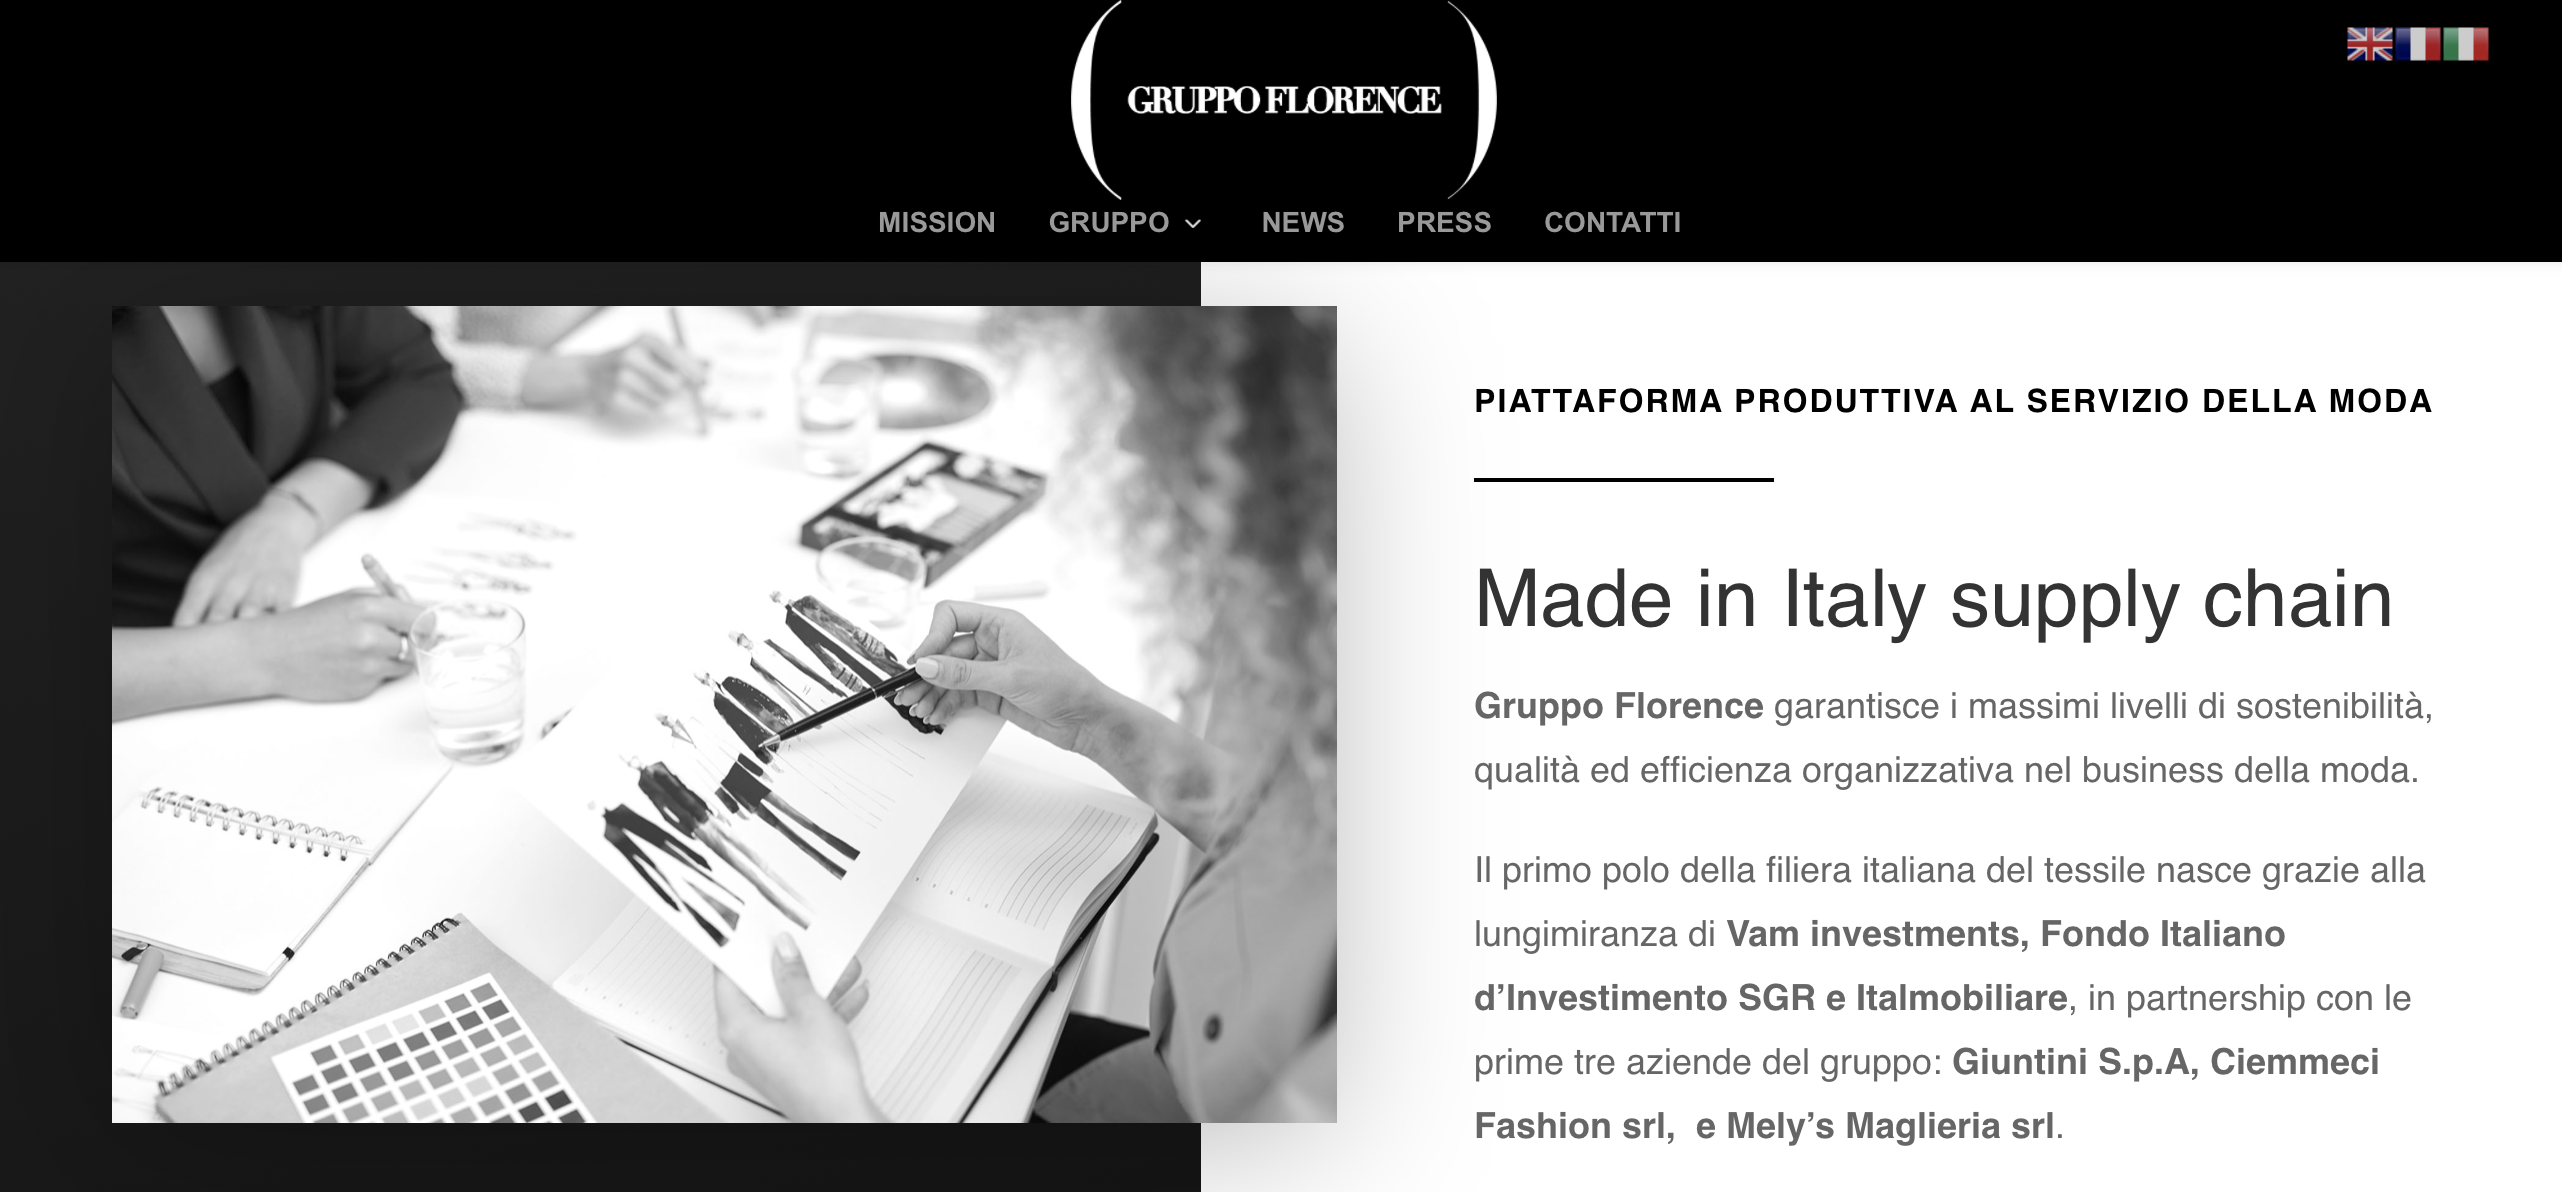 意大利 Florence 集团全资收购平针织物生产商 Manifatture Cesari